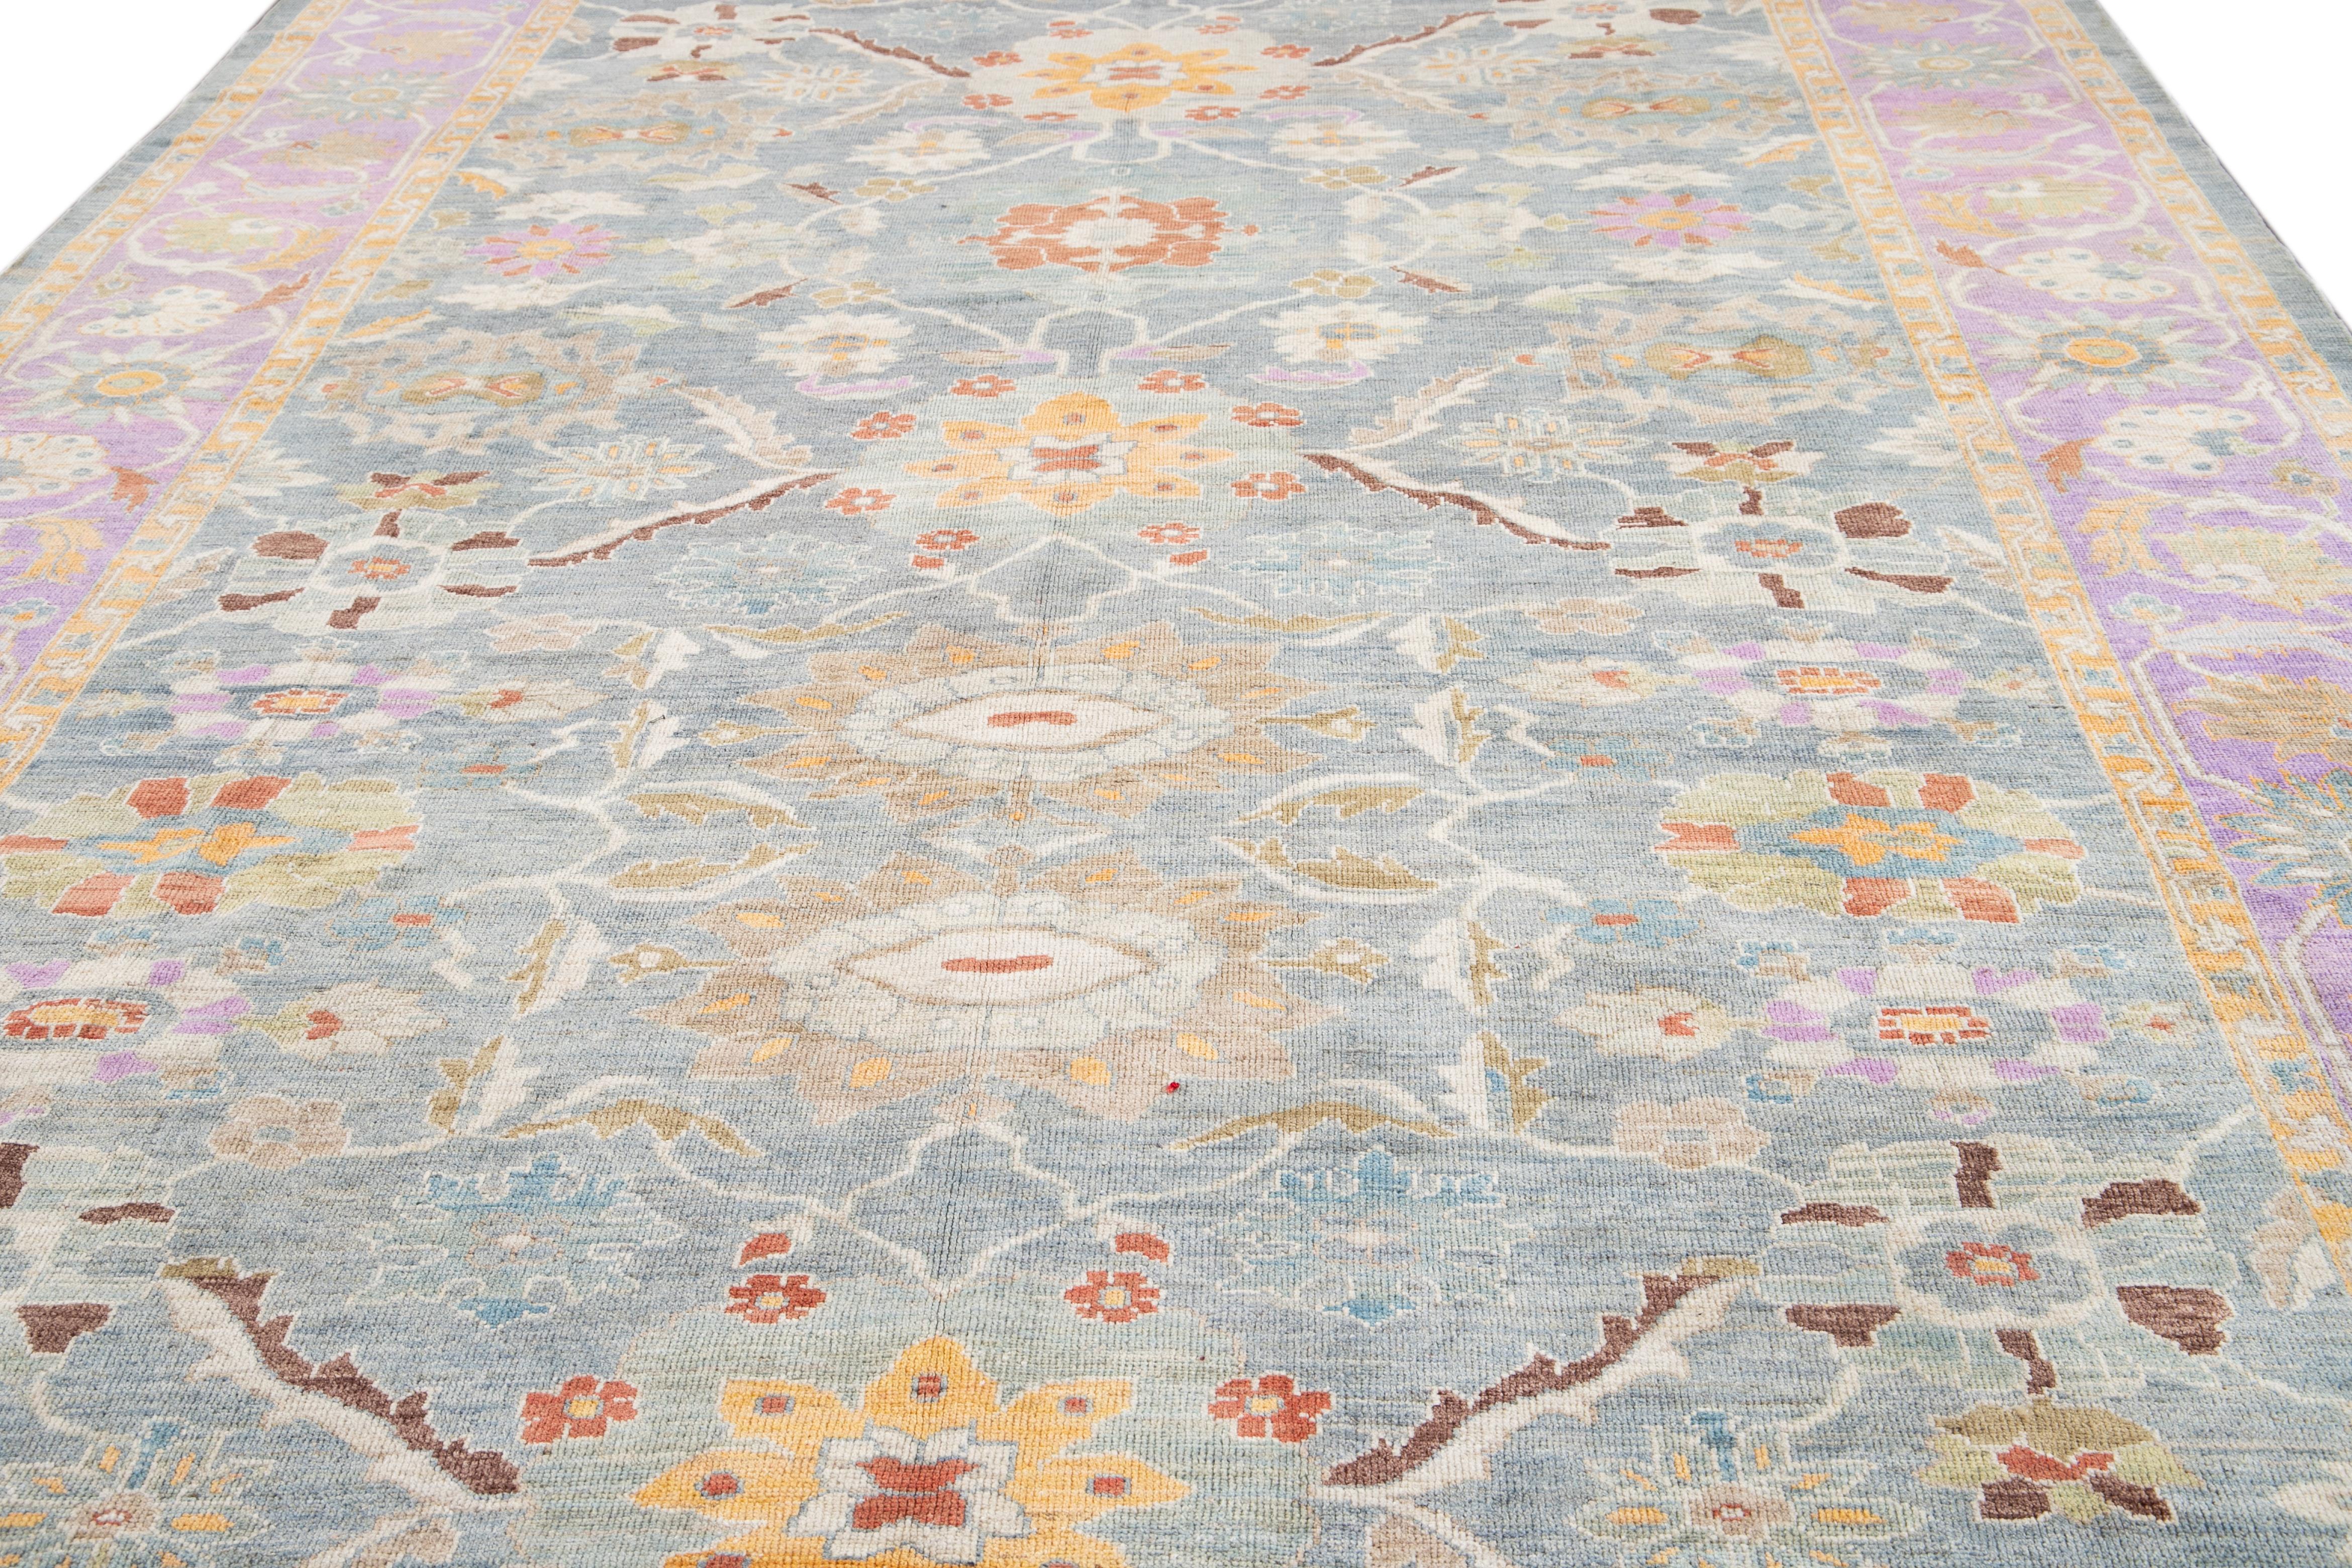 Magnifique tapis contemporain de Sultanabad en laine nouée à la main avec un champ bleu. Ce tapis persan a un cadre violet et des accents multicolores dans un magnifique motif floral.

Ce tapis mesure 10' x 16'.